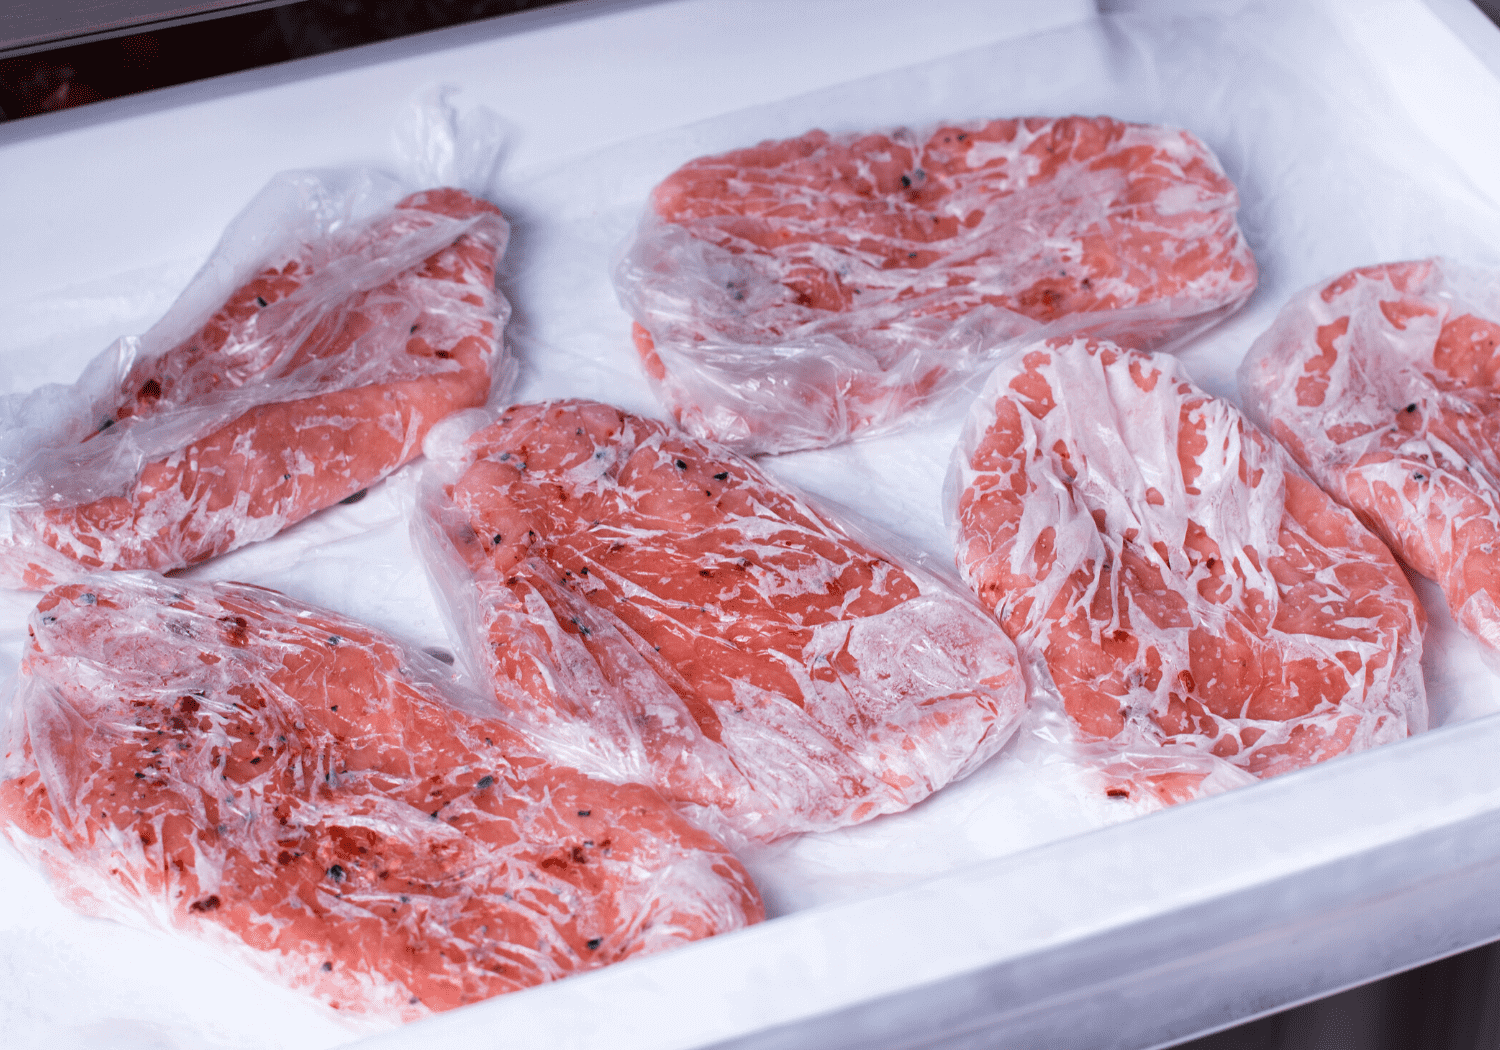 Địa điểm cung cấp thịt bò tươi, ngon, đảm bảo chất lượng tại Tp. HCM